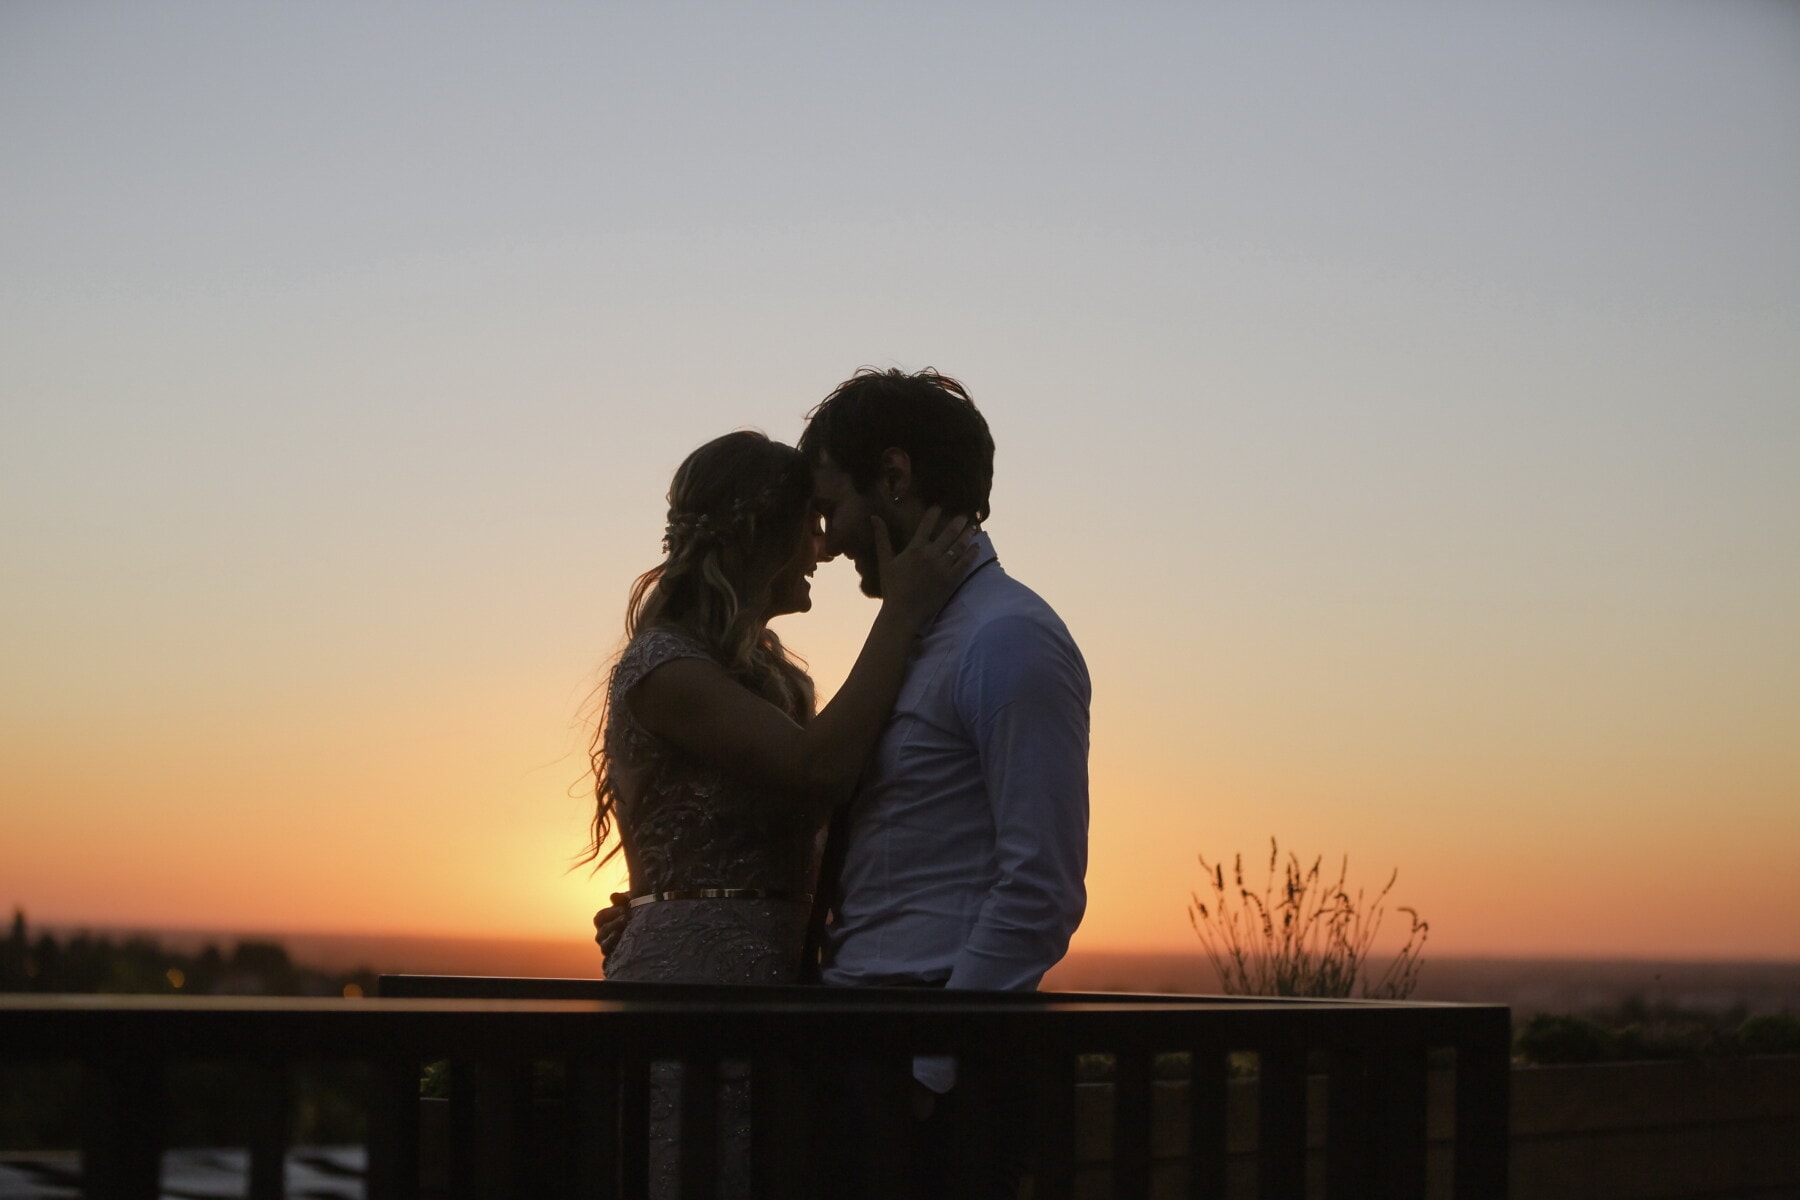 свидание, поцелуй, закат, с подсветкой, балкон, обнимать, солнце, любовь, девушка, романтика